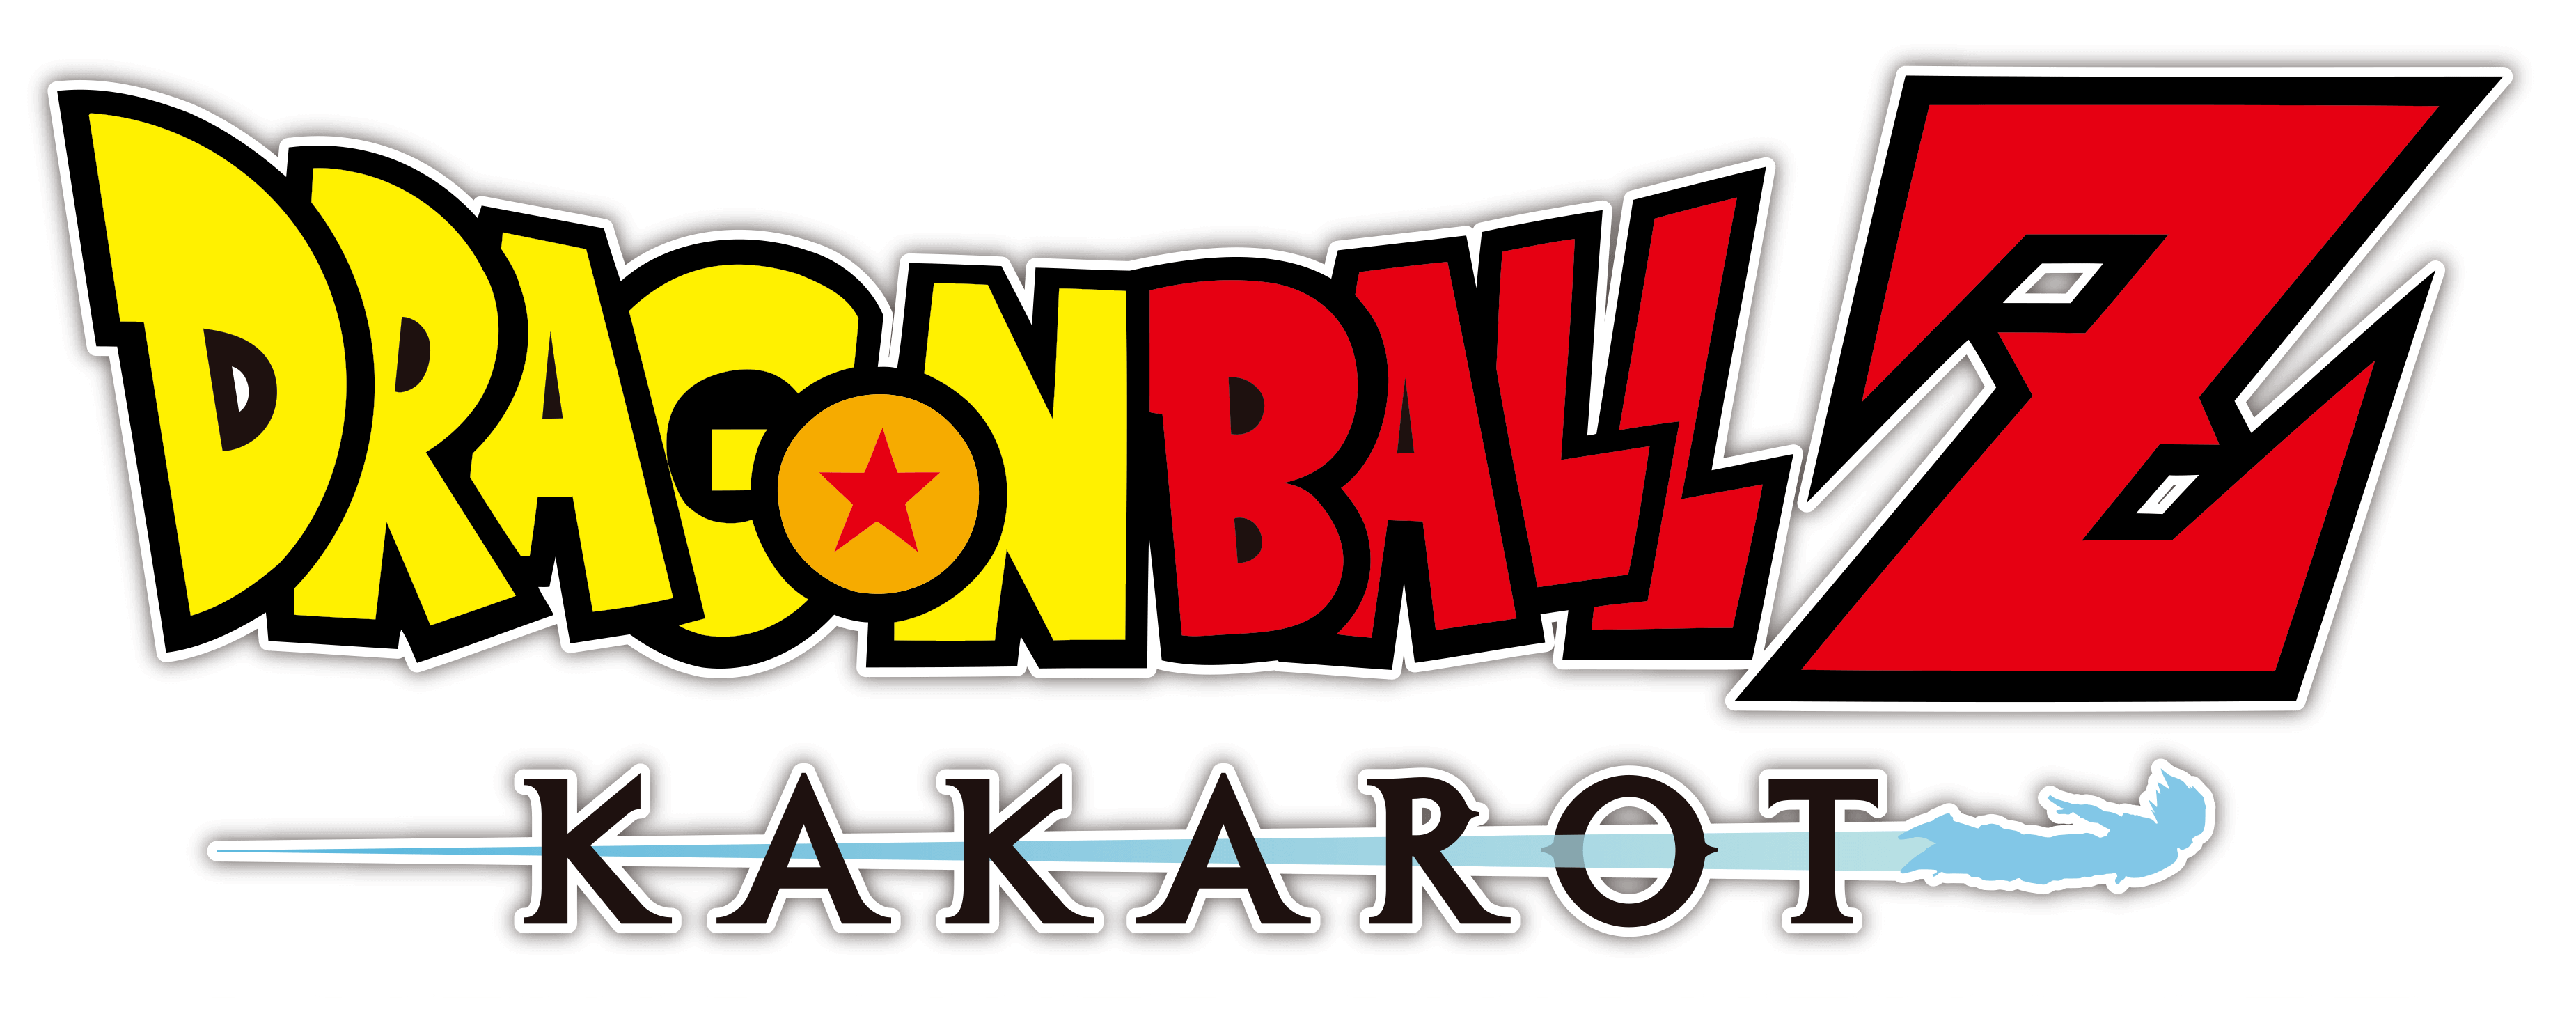 logo dragonball-z kakarot